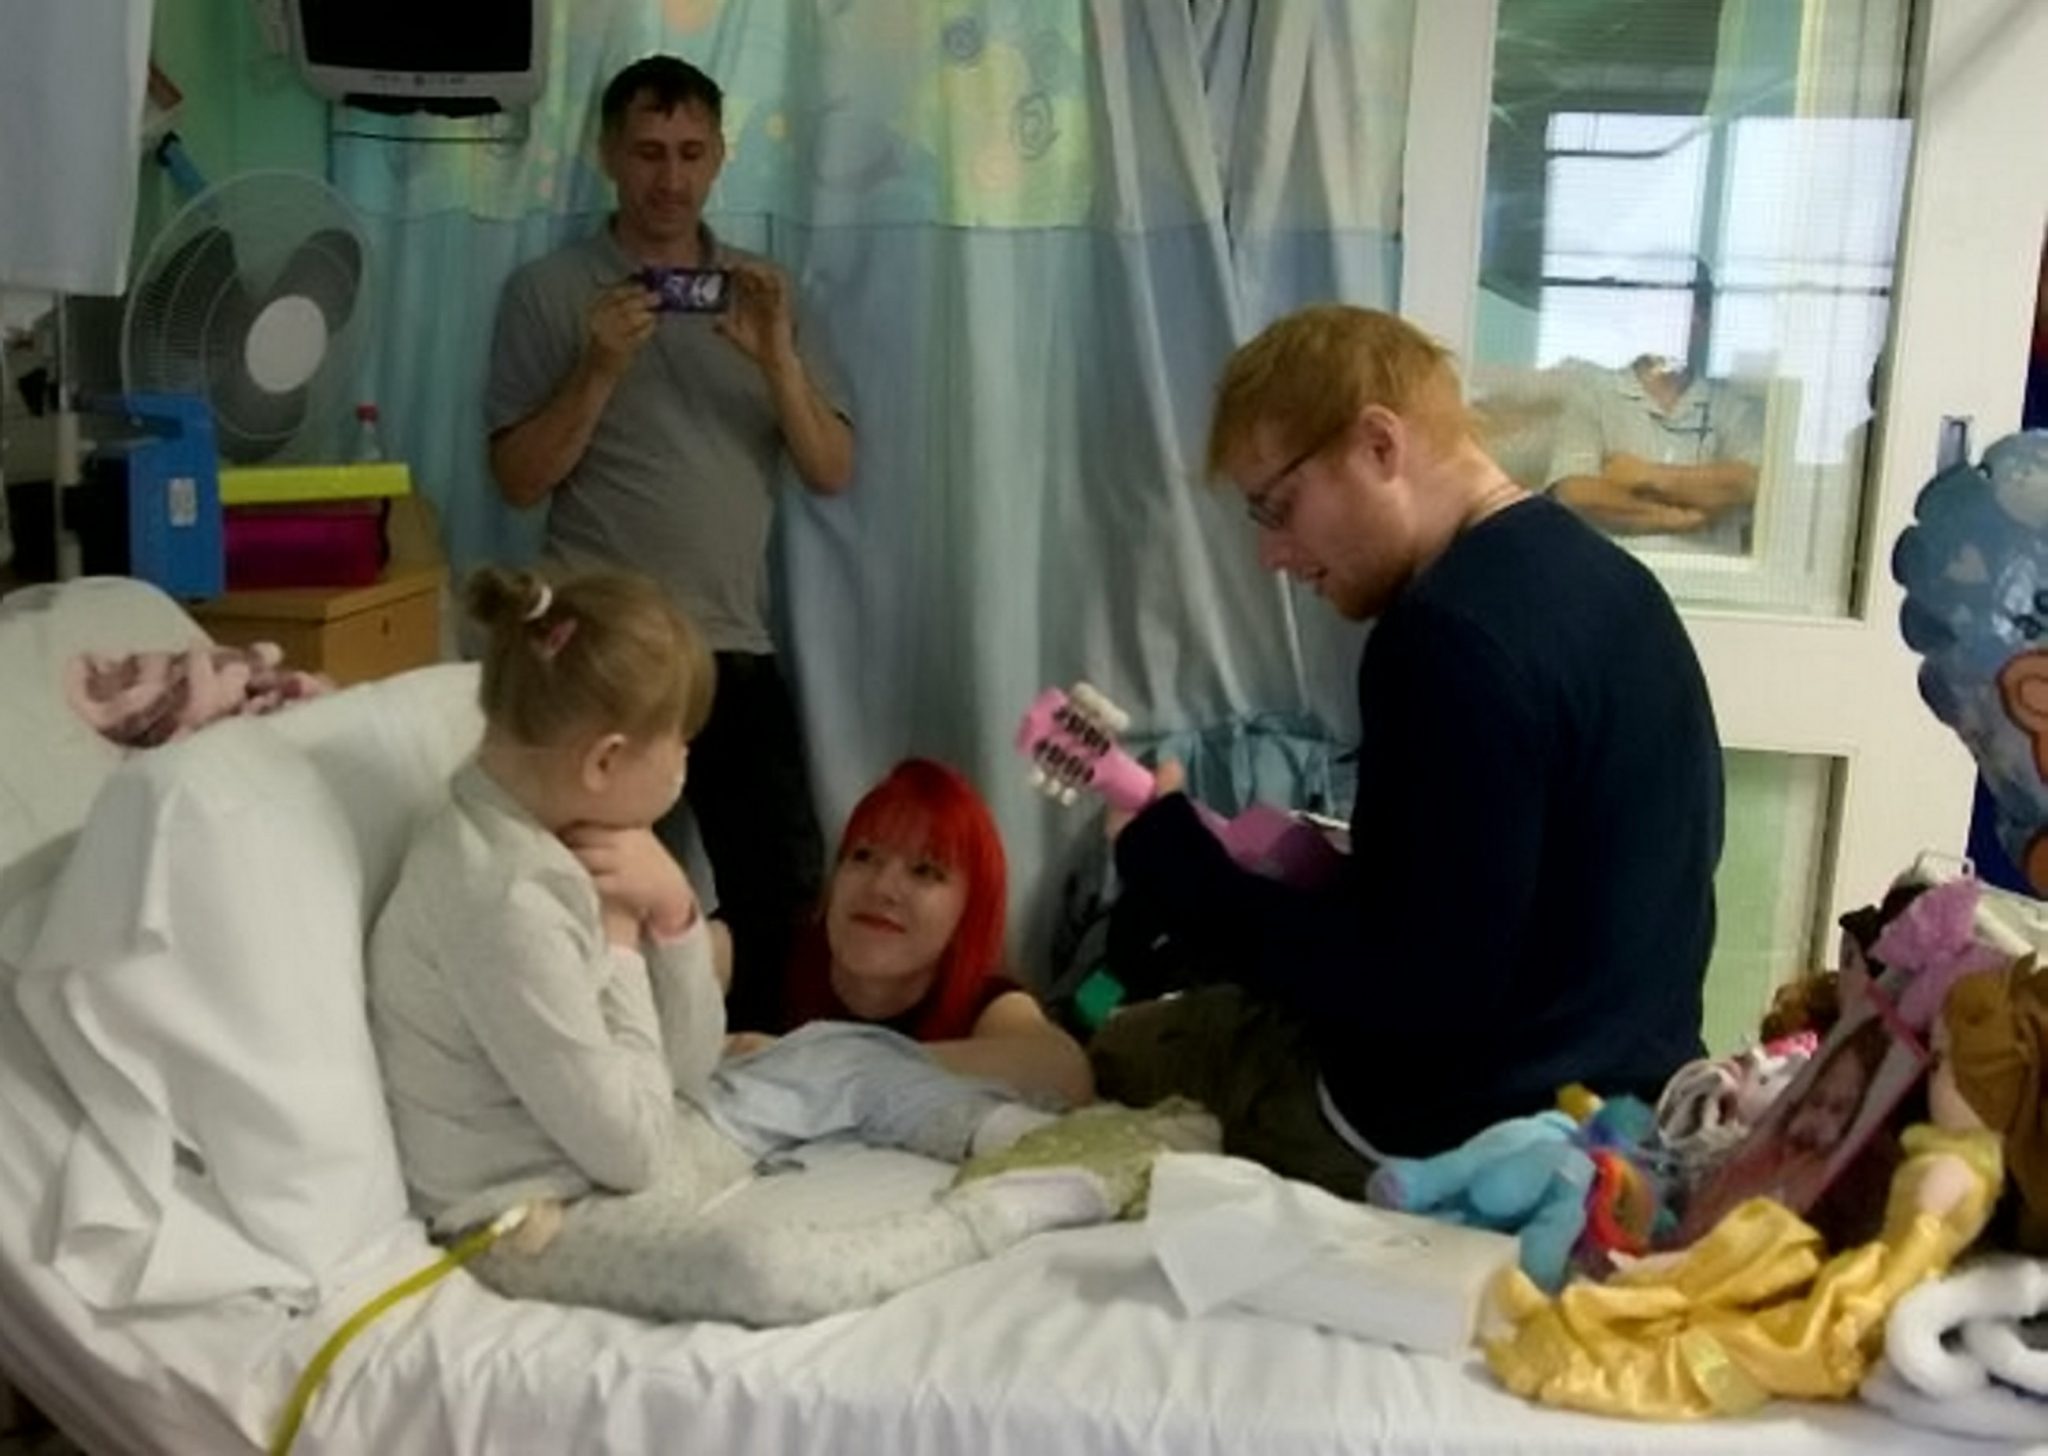 Ed Sheeran visitou, cantou, e encantou pequena fã internada num hospital